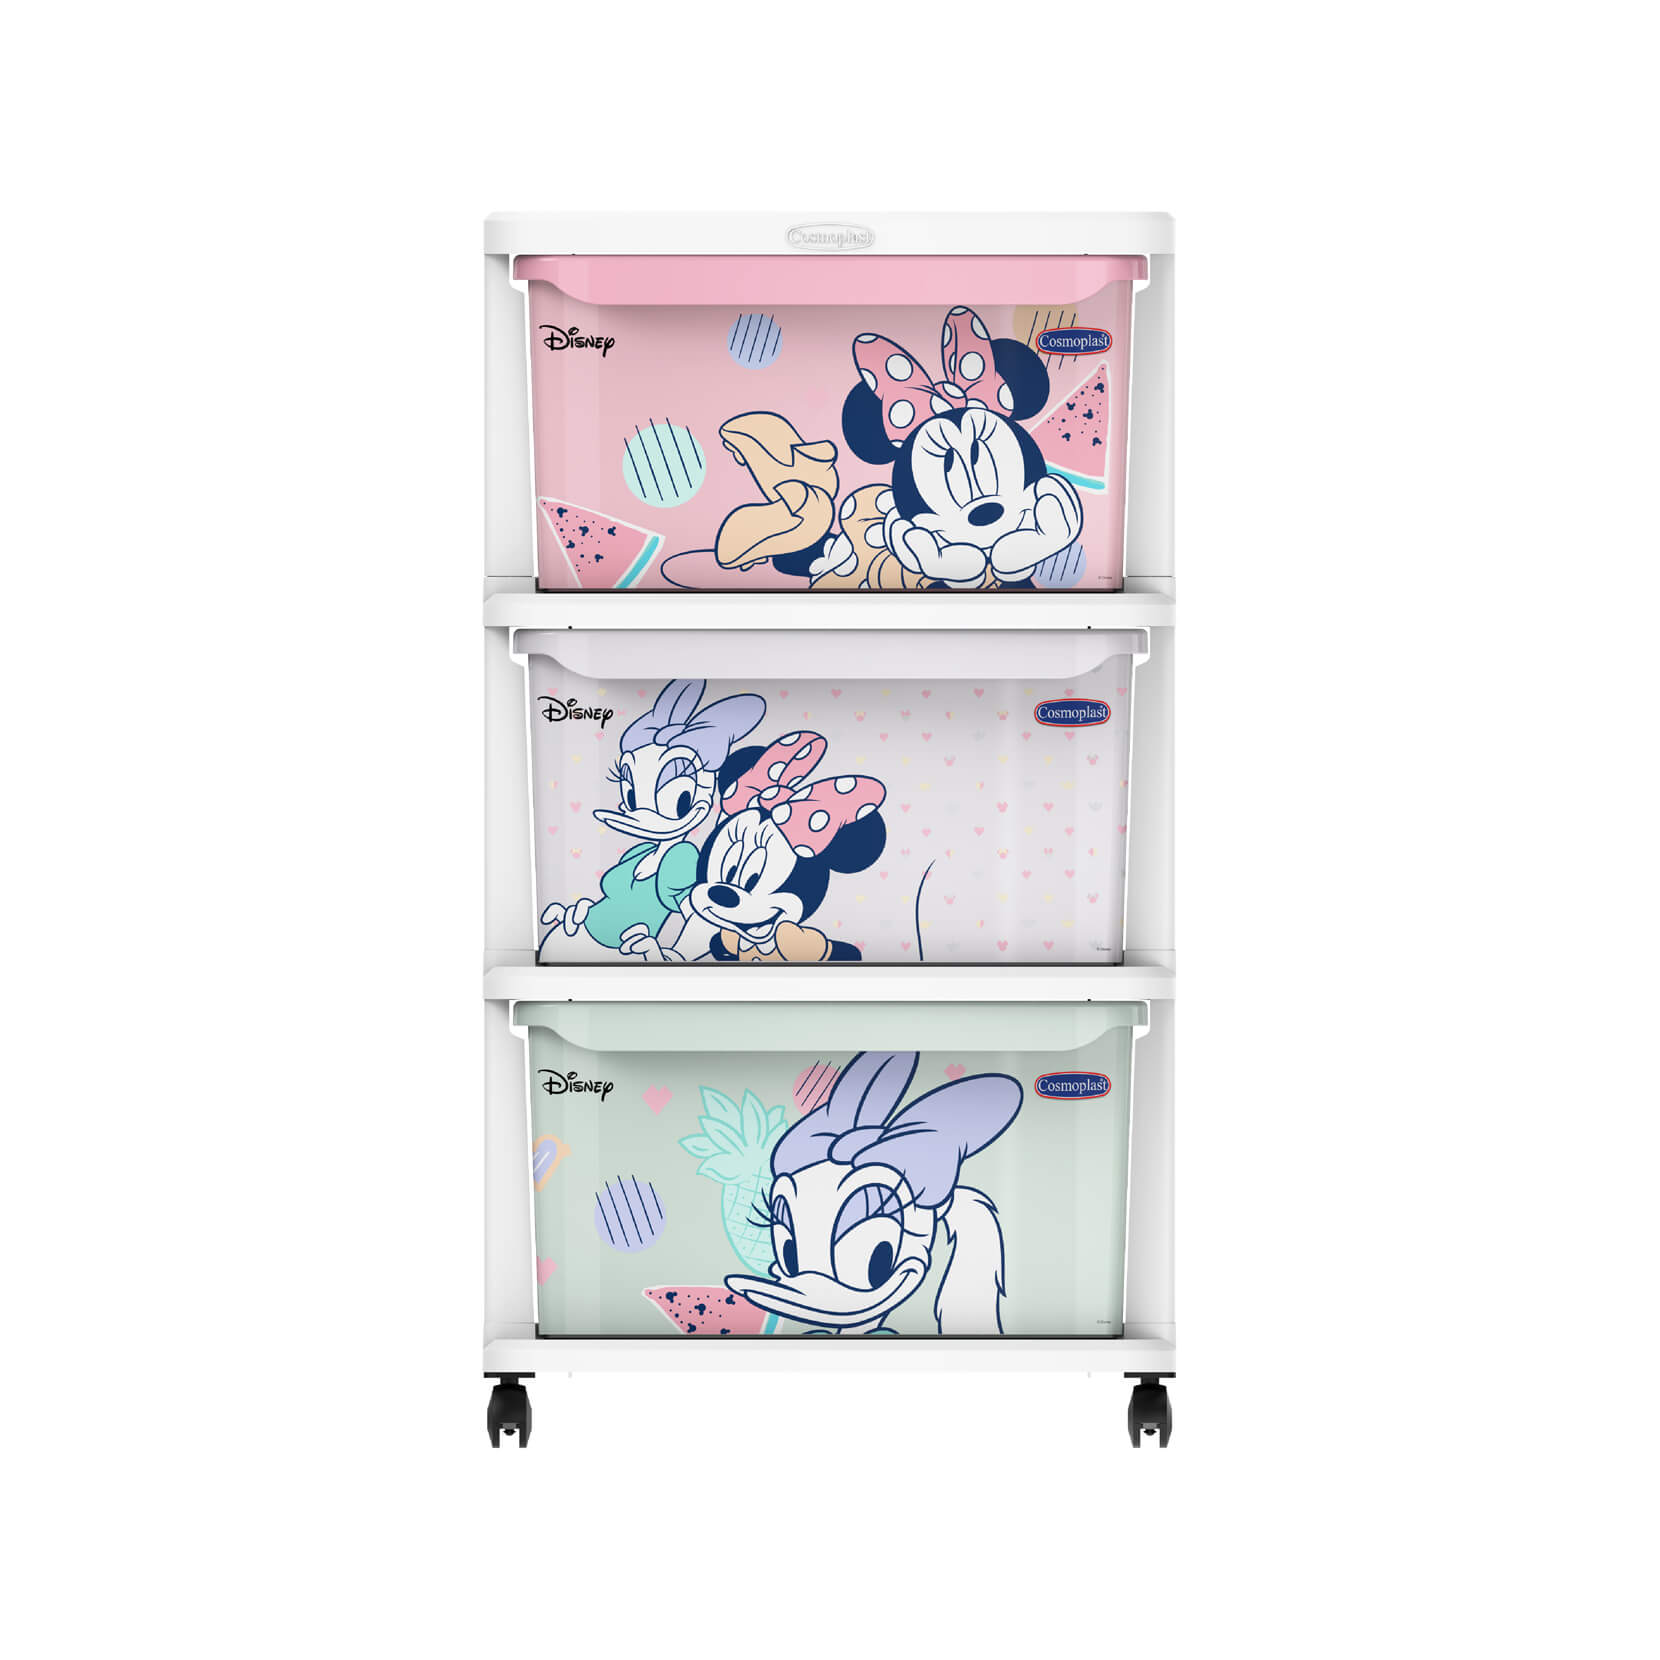 Drawer Storage Cabinet